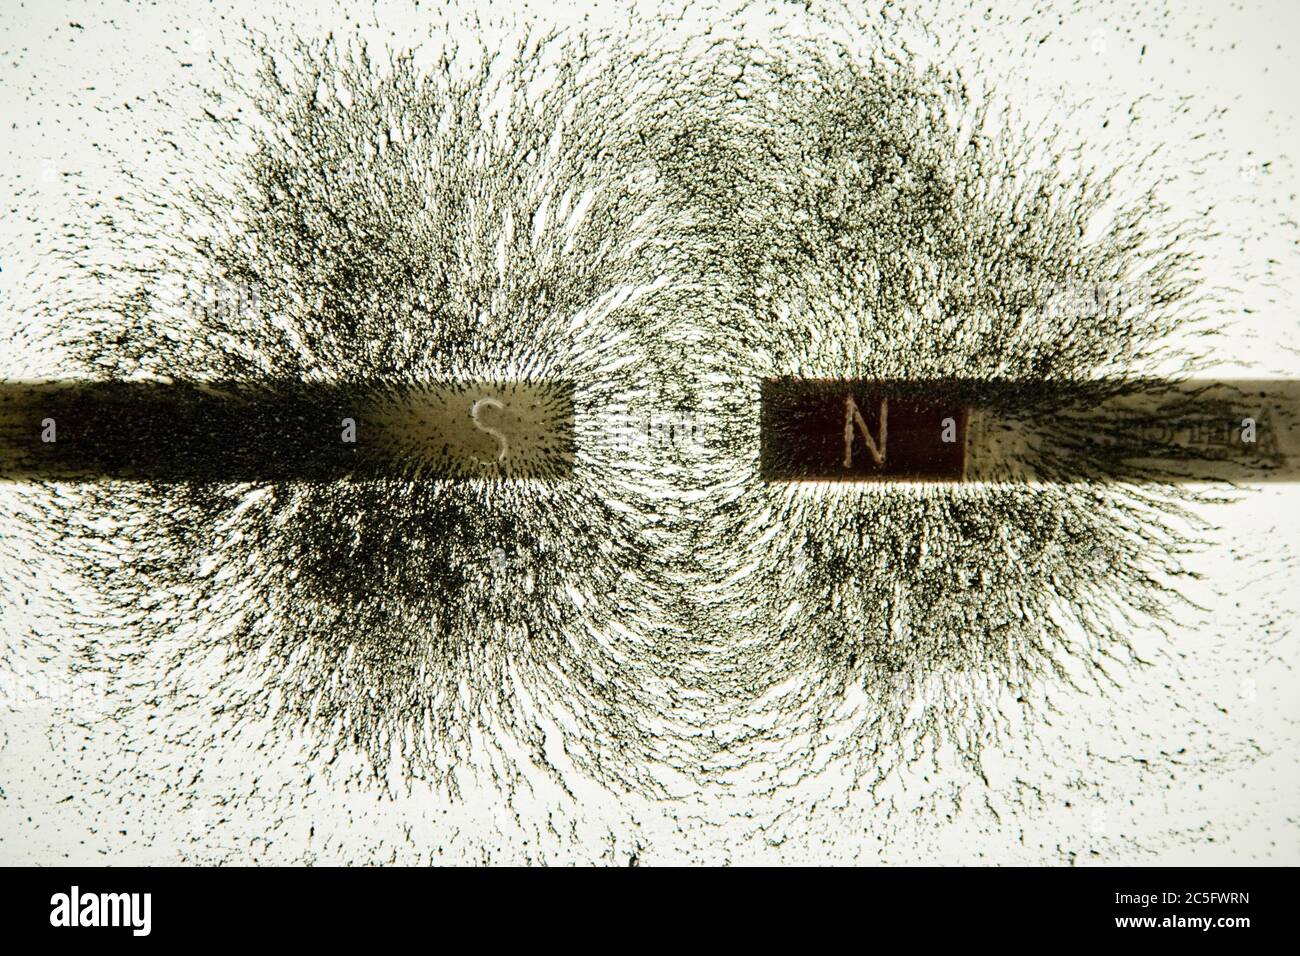 Magneti con poli opposti attraggono limature di ferro Foto Stock